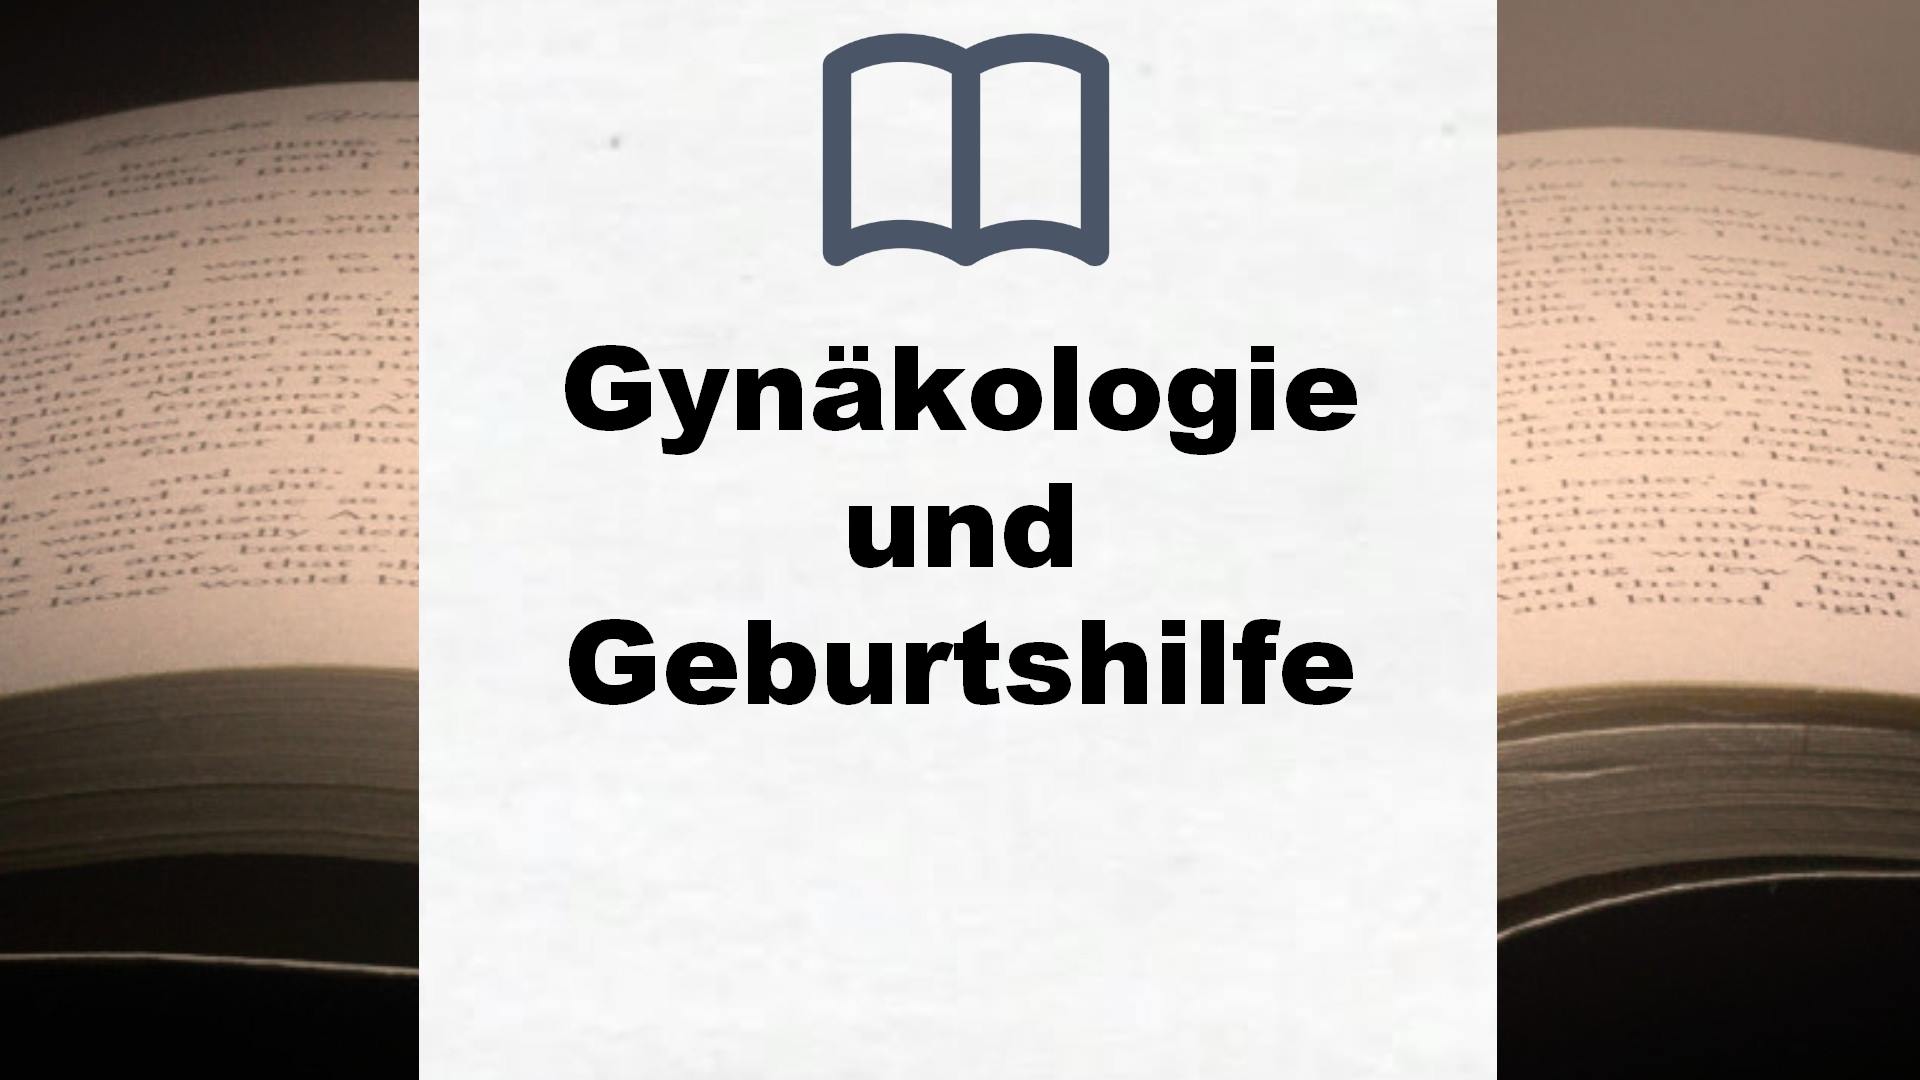 Bücher über Gynäkologie und Geburtshilfe